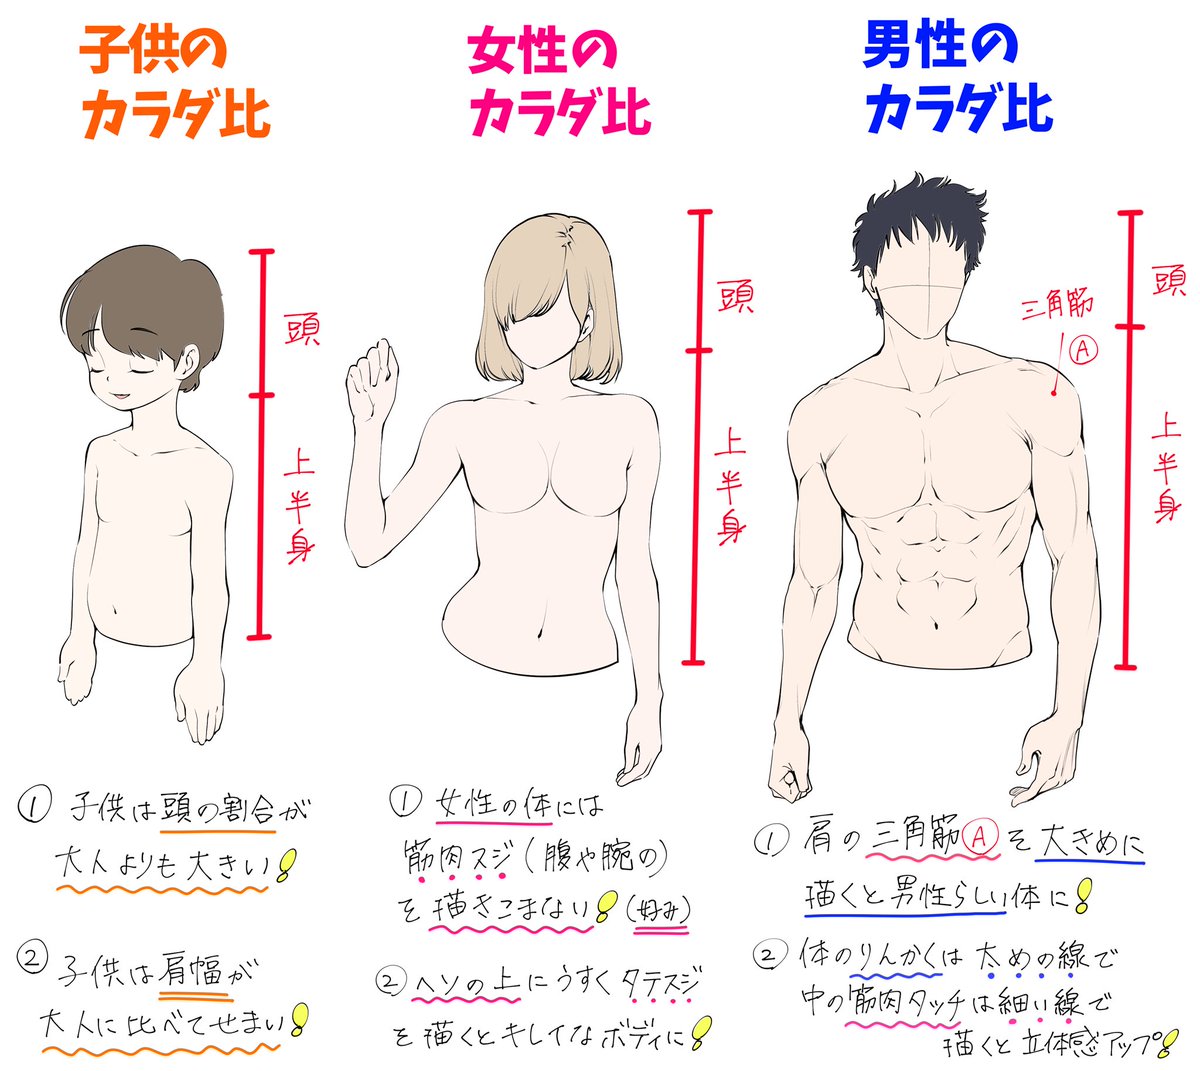 吉村拓也 イラスト講座 子供 女性 男性 の 手 腕 上半身 を描くときの カラダ比パターン表 作りました T Co Tdzbii1mha Twitter